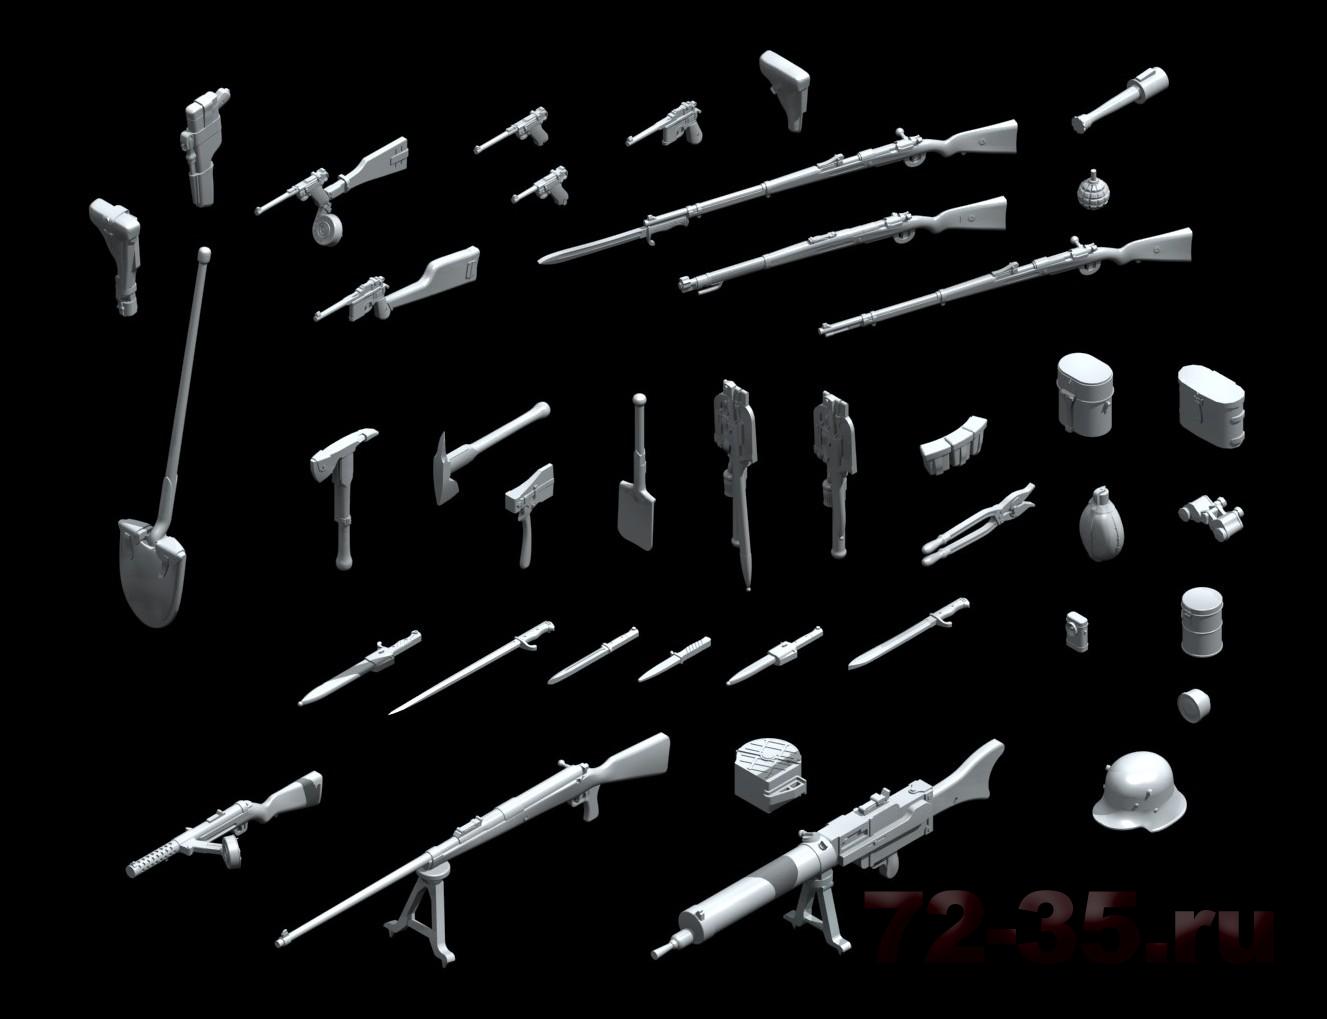 Вооружение и снаряжение Германской пехоты І МВ 1396866940_wwigwae-render.jpg